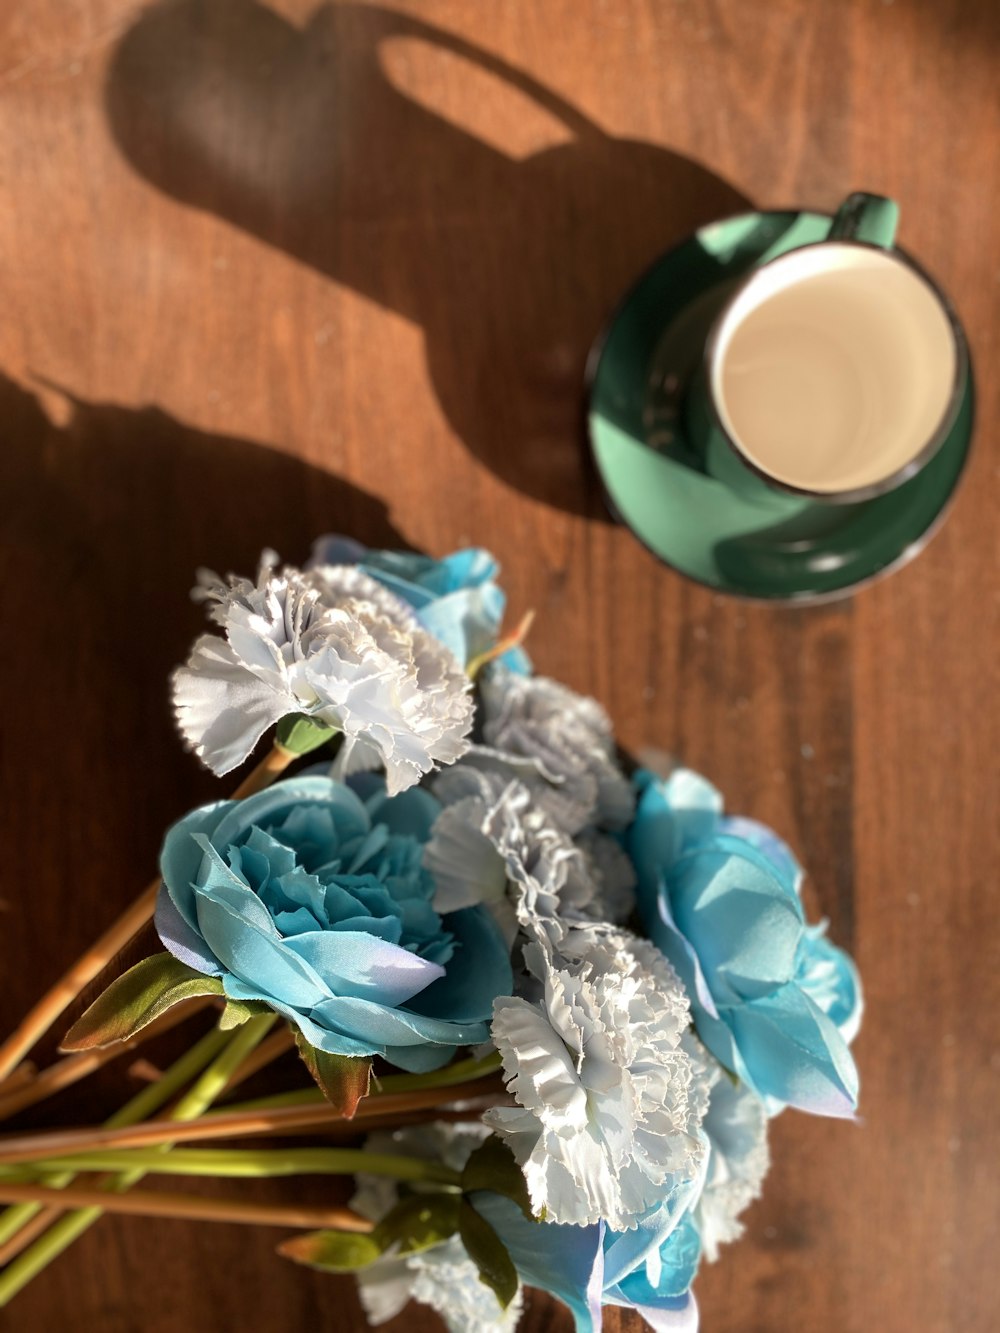 갈색 나무 테이블에 녹색 세라믹 머그잔 옆에 파란색과 흰색 꽃 꽃다발